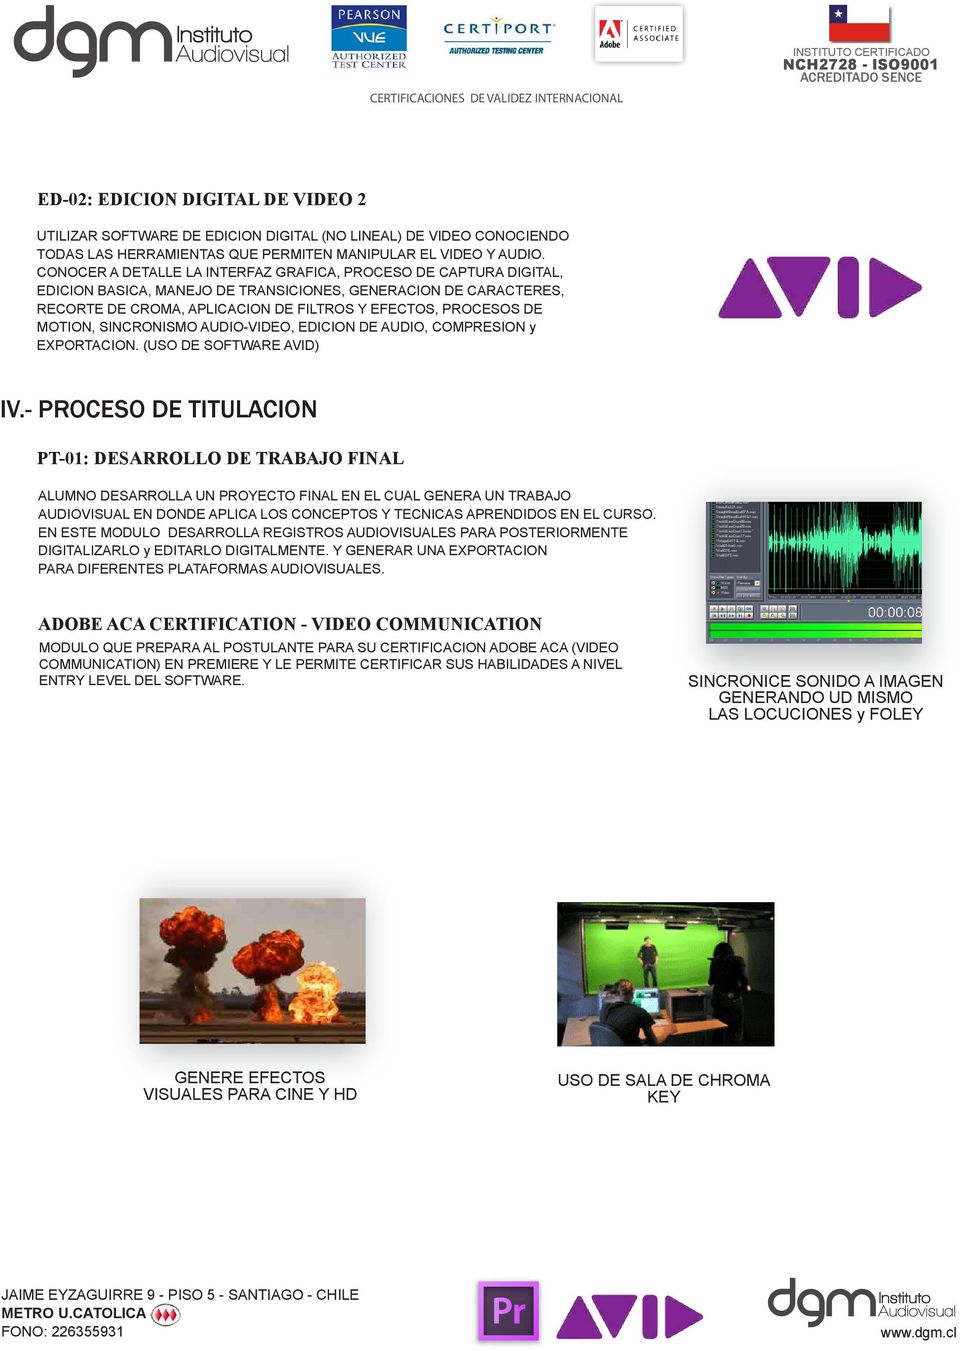 MOTION, SINCRONISMO AUDIO-VIDEO, EDICION DE AUDIO, COMPRESION y EXPORTACION. (USO DE SOFTWARE AVID) IV.